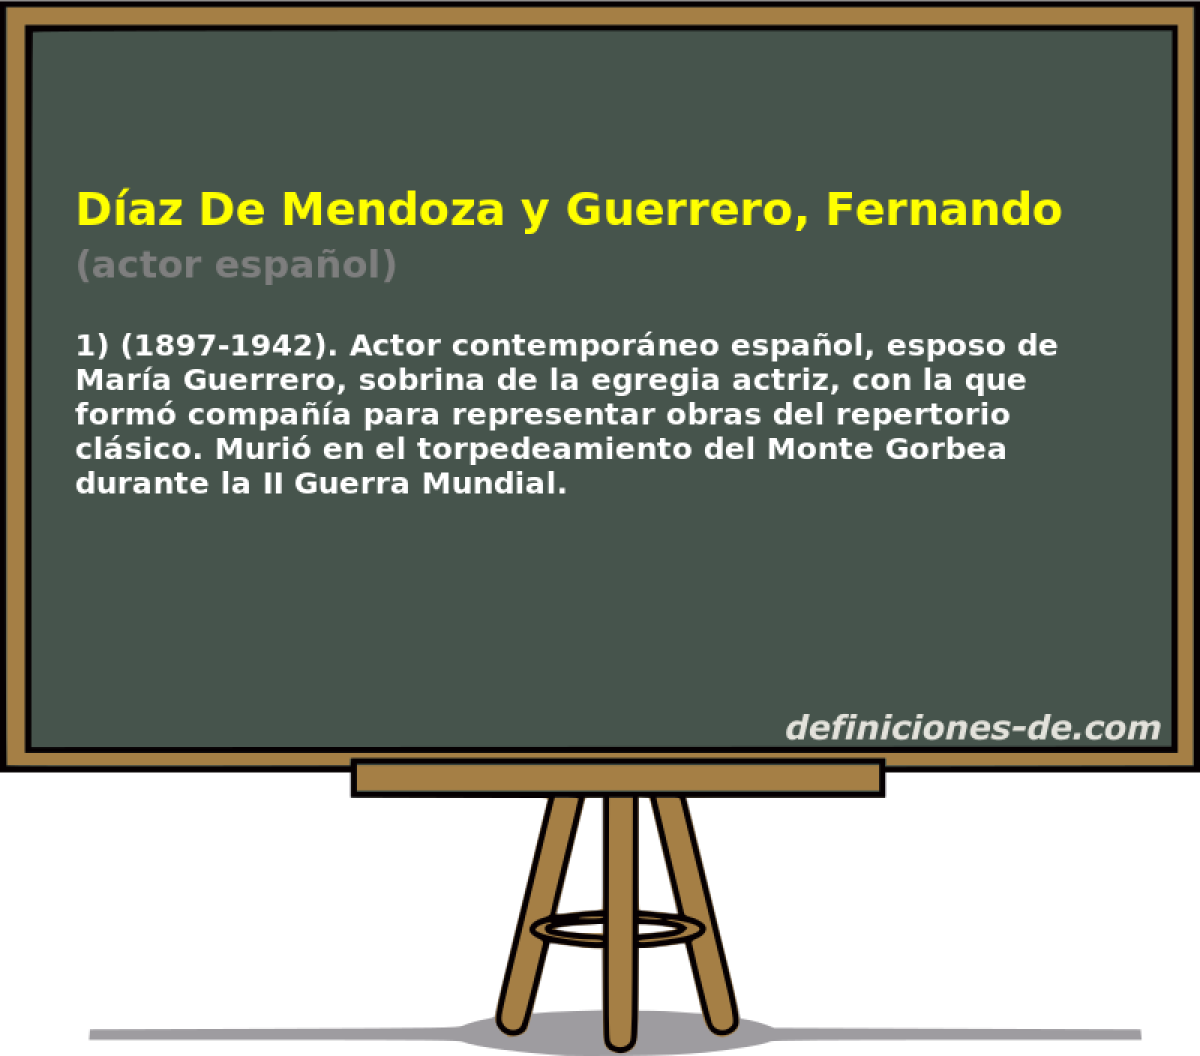 Daz De Mendoza y Guerrero, Fernando (actor espaol)